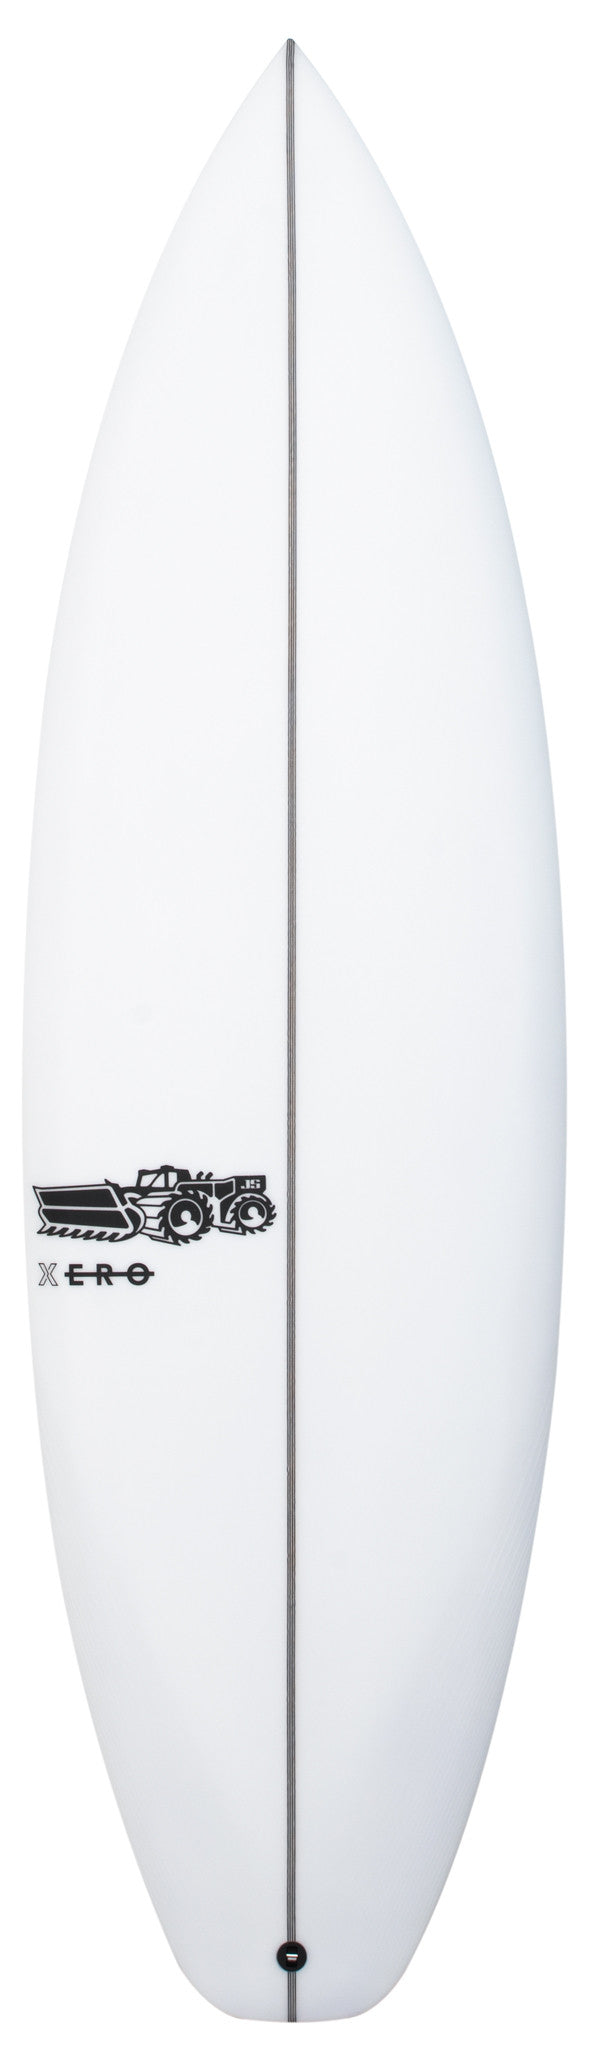 Xero Easy Rider 5'11